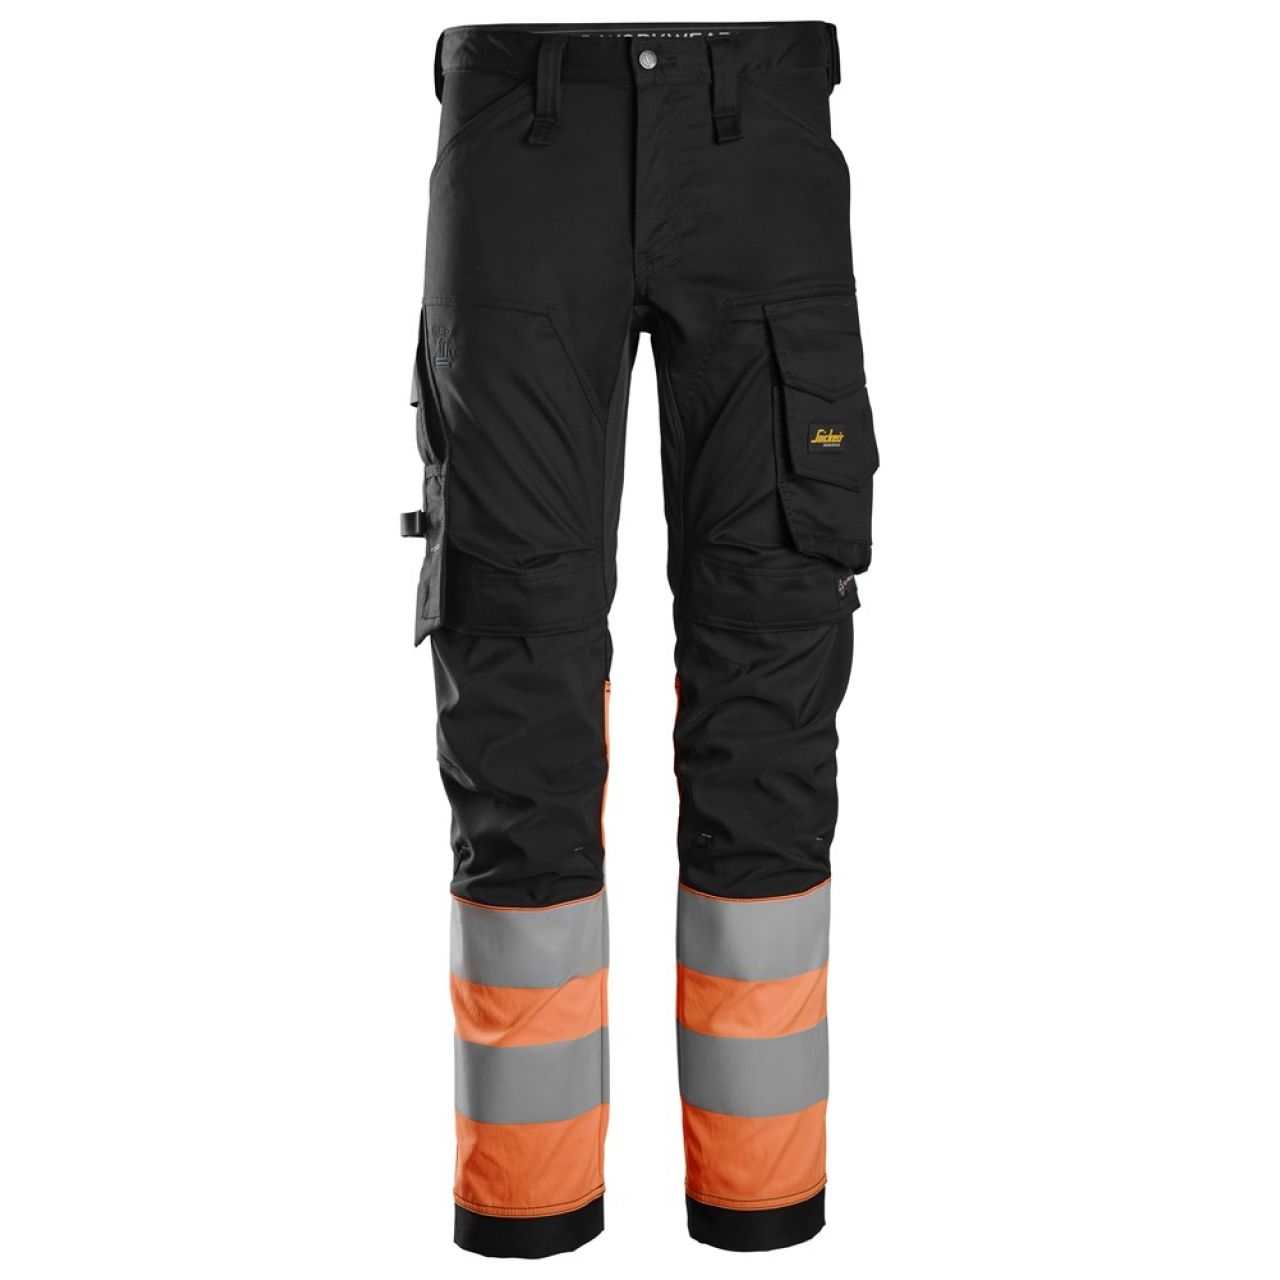 6334 Pantalones largos de trabajo elásticos de alta visibilidad clase 1 negro-naranja talla 254